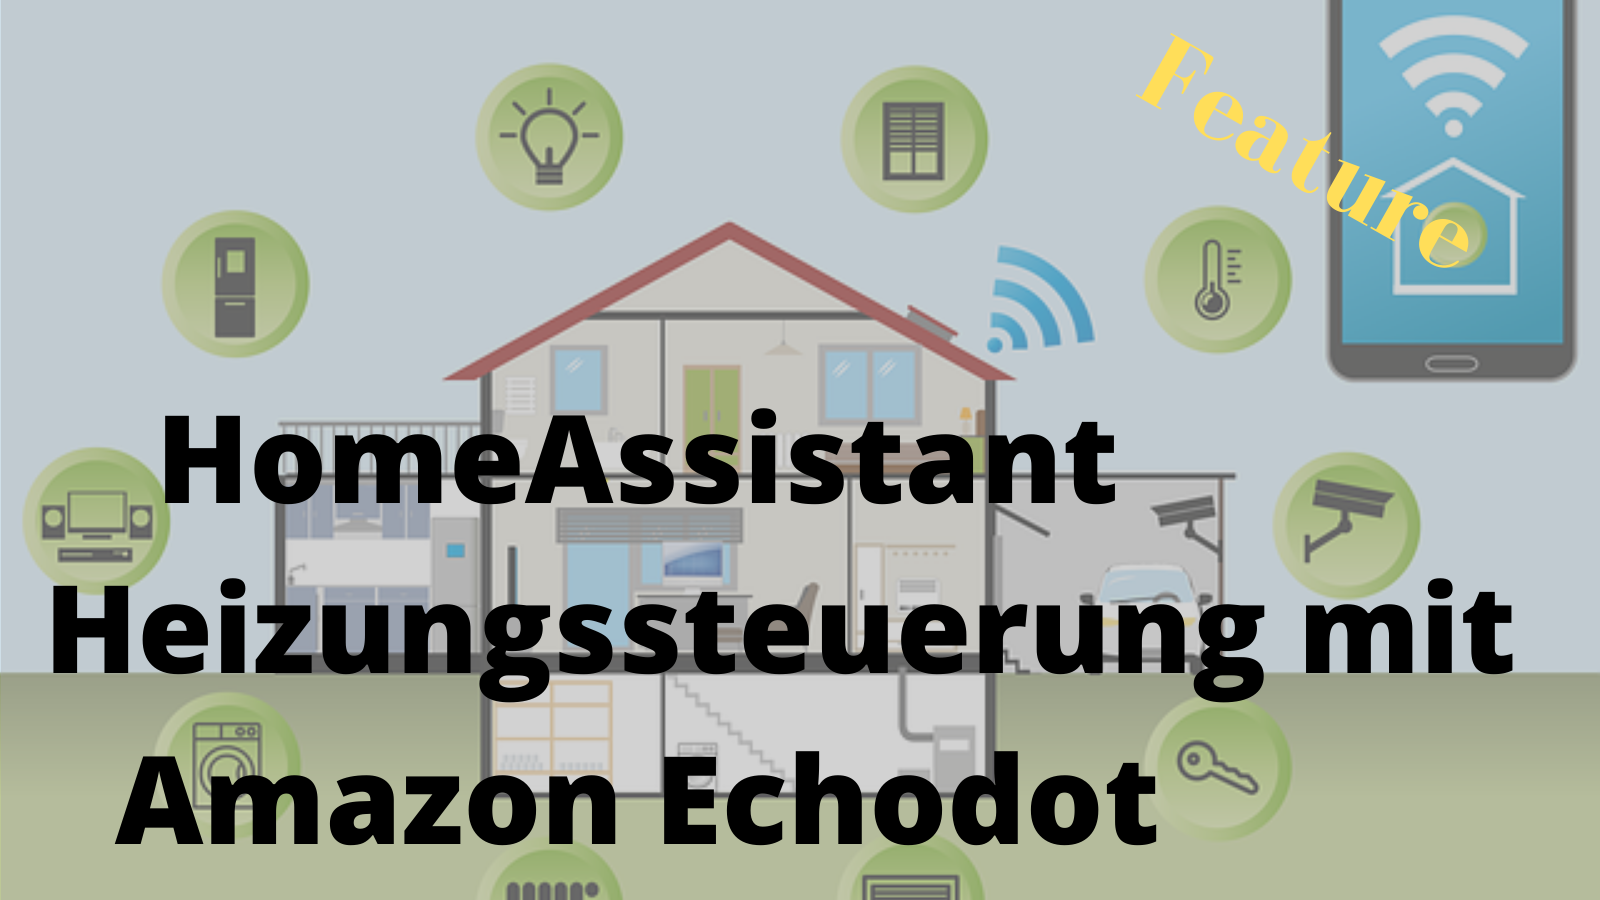 HomeAssistant: Heizungssteuerung mit Amazon Echodot